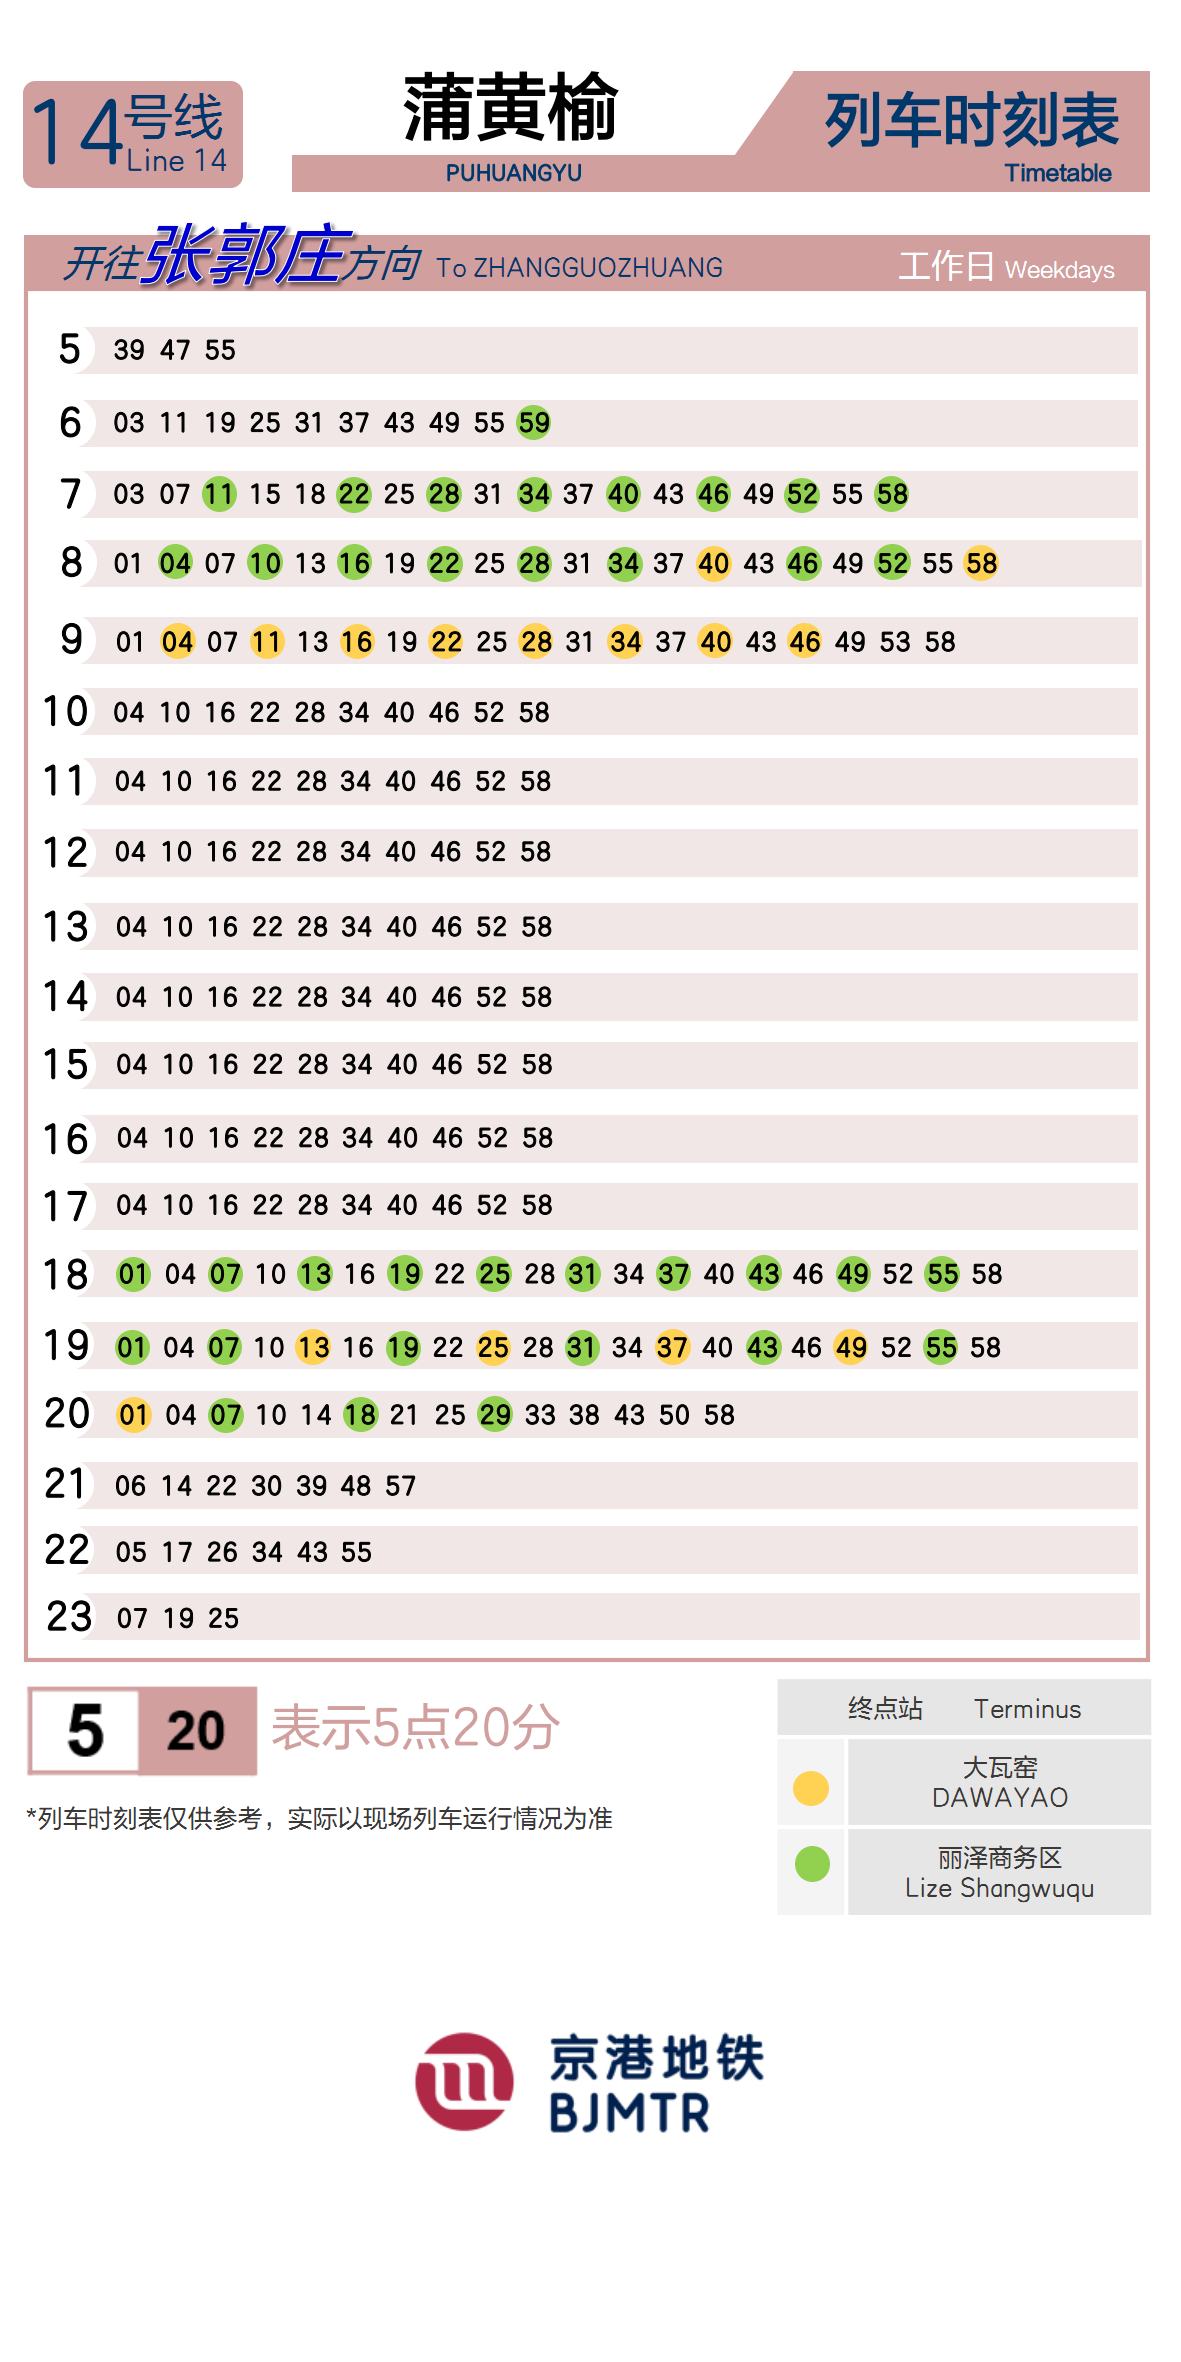 Line 14Puhuangyu时刻表